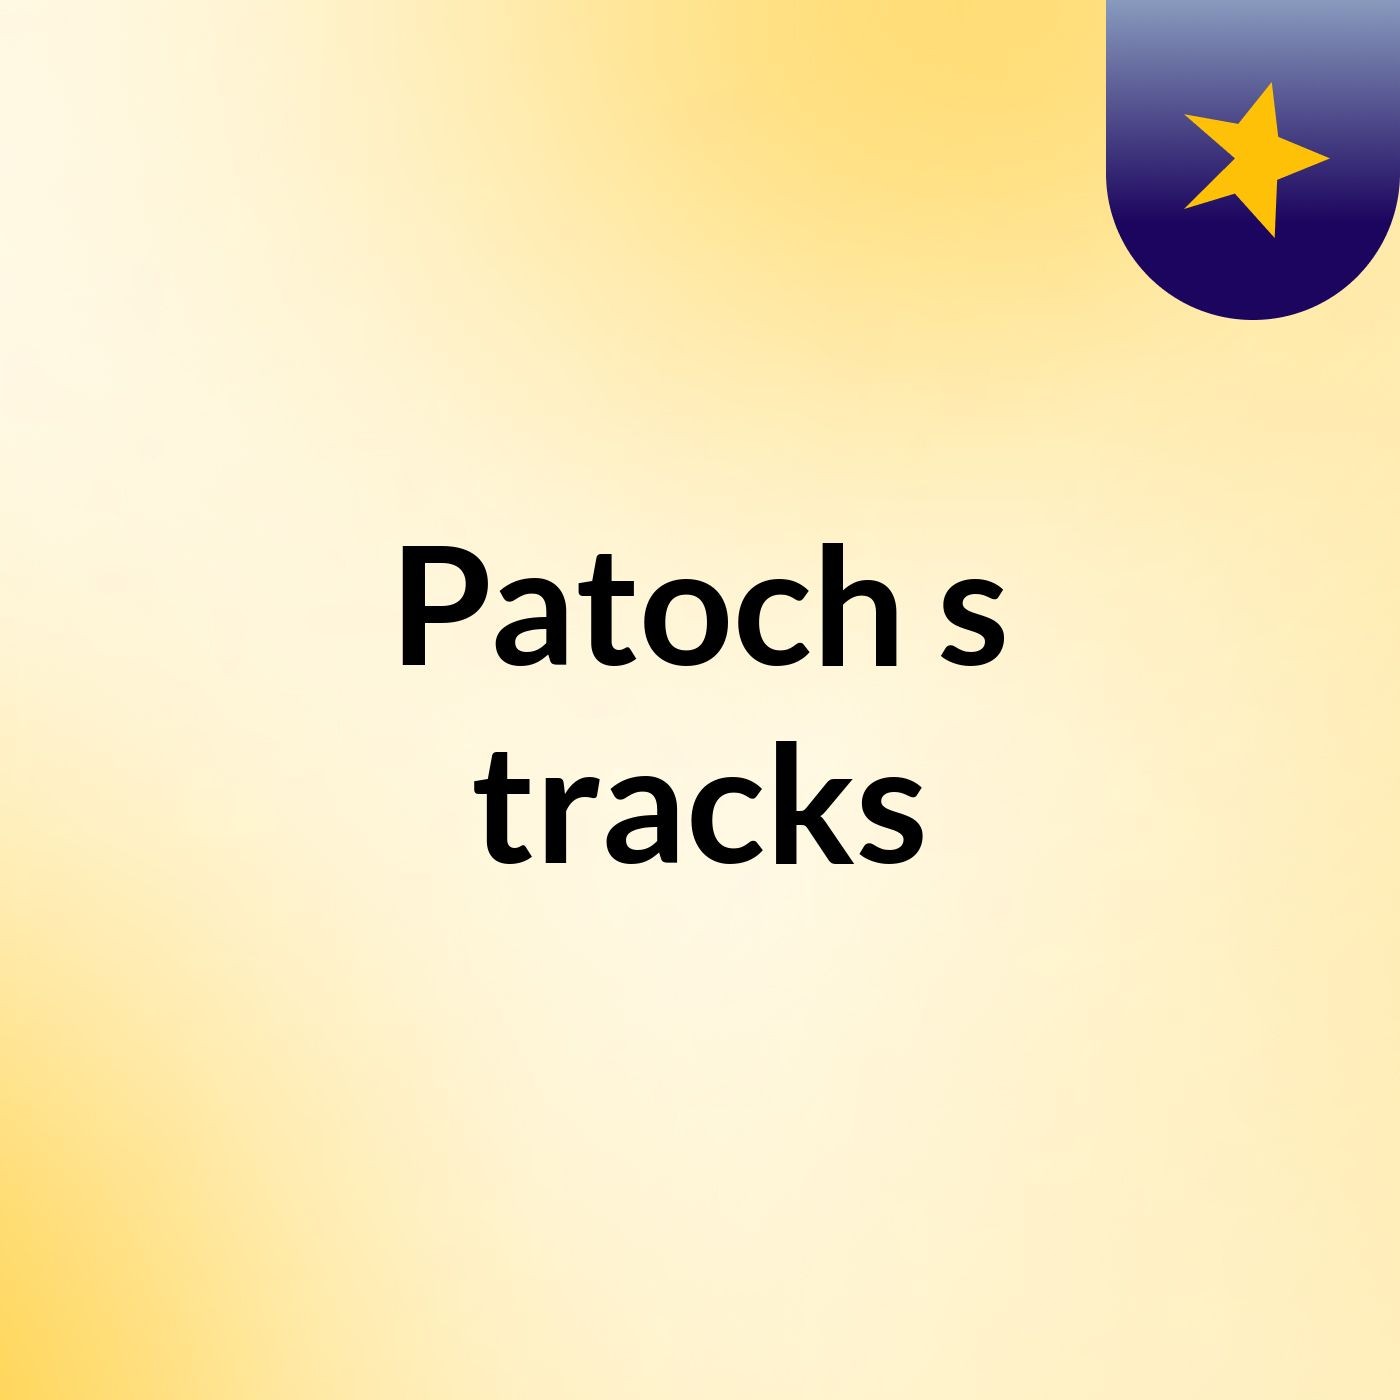 Patoch's tracks